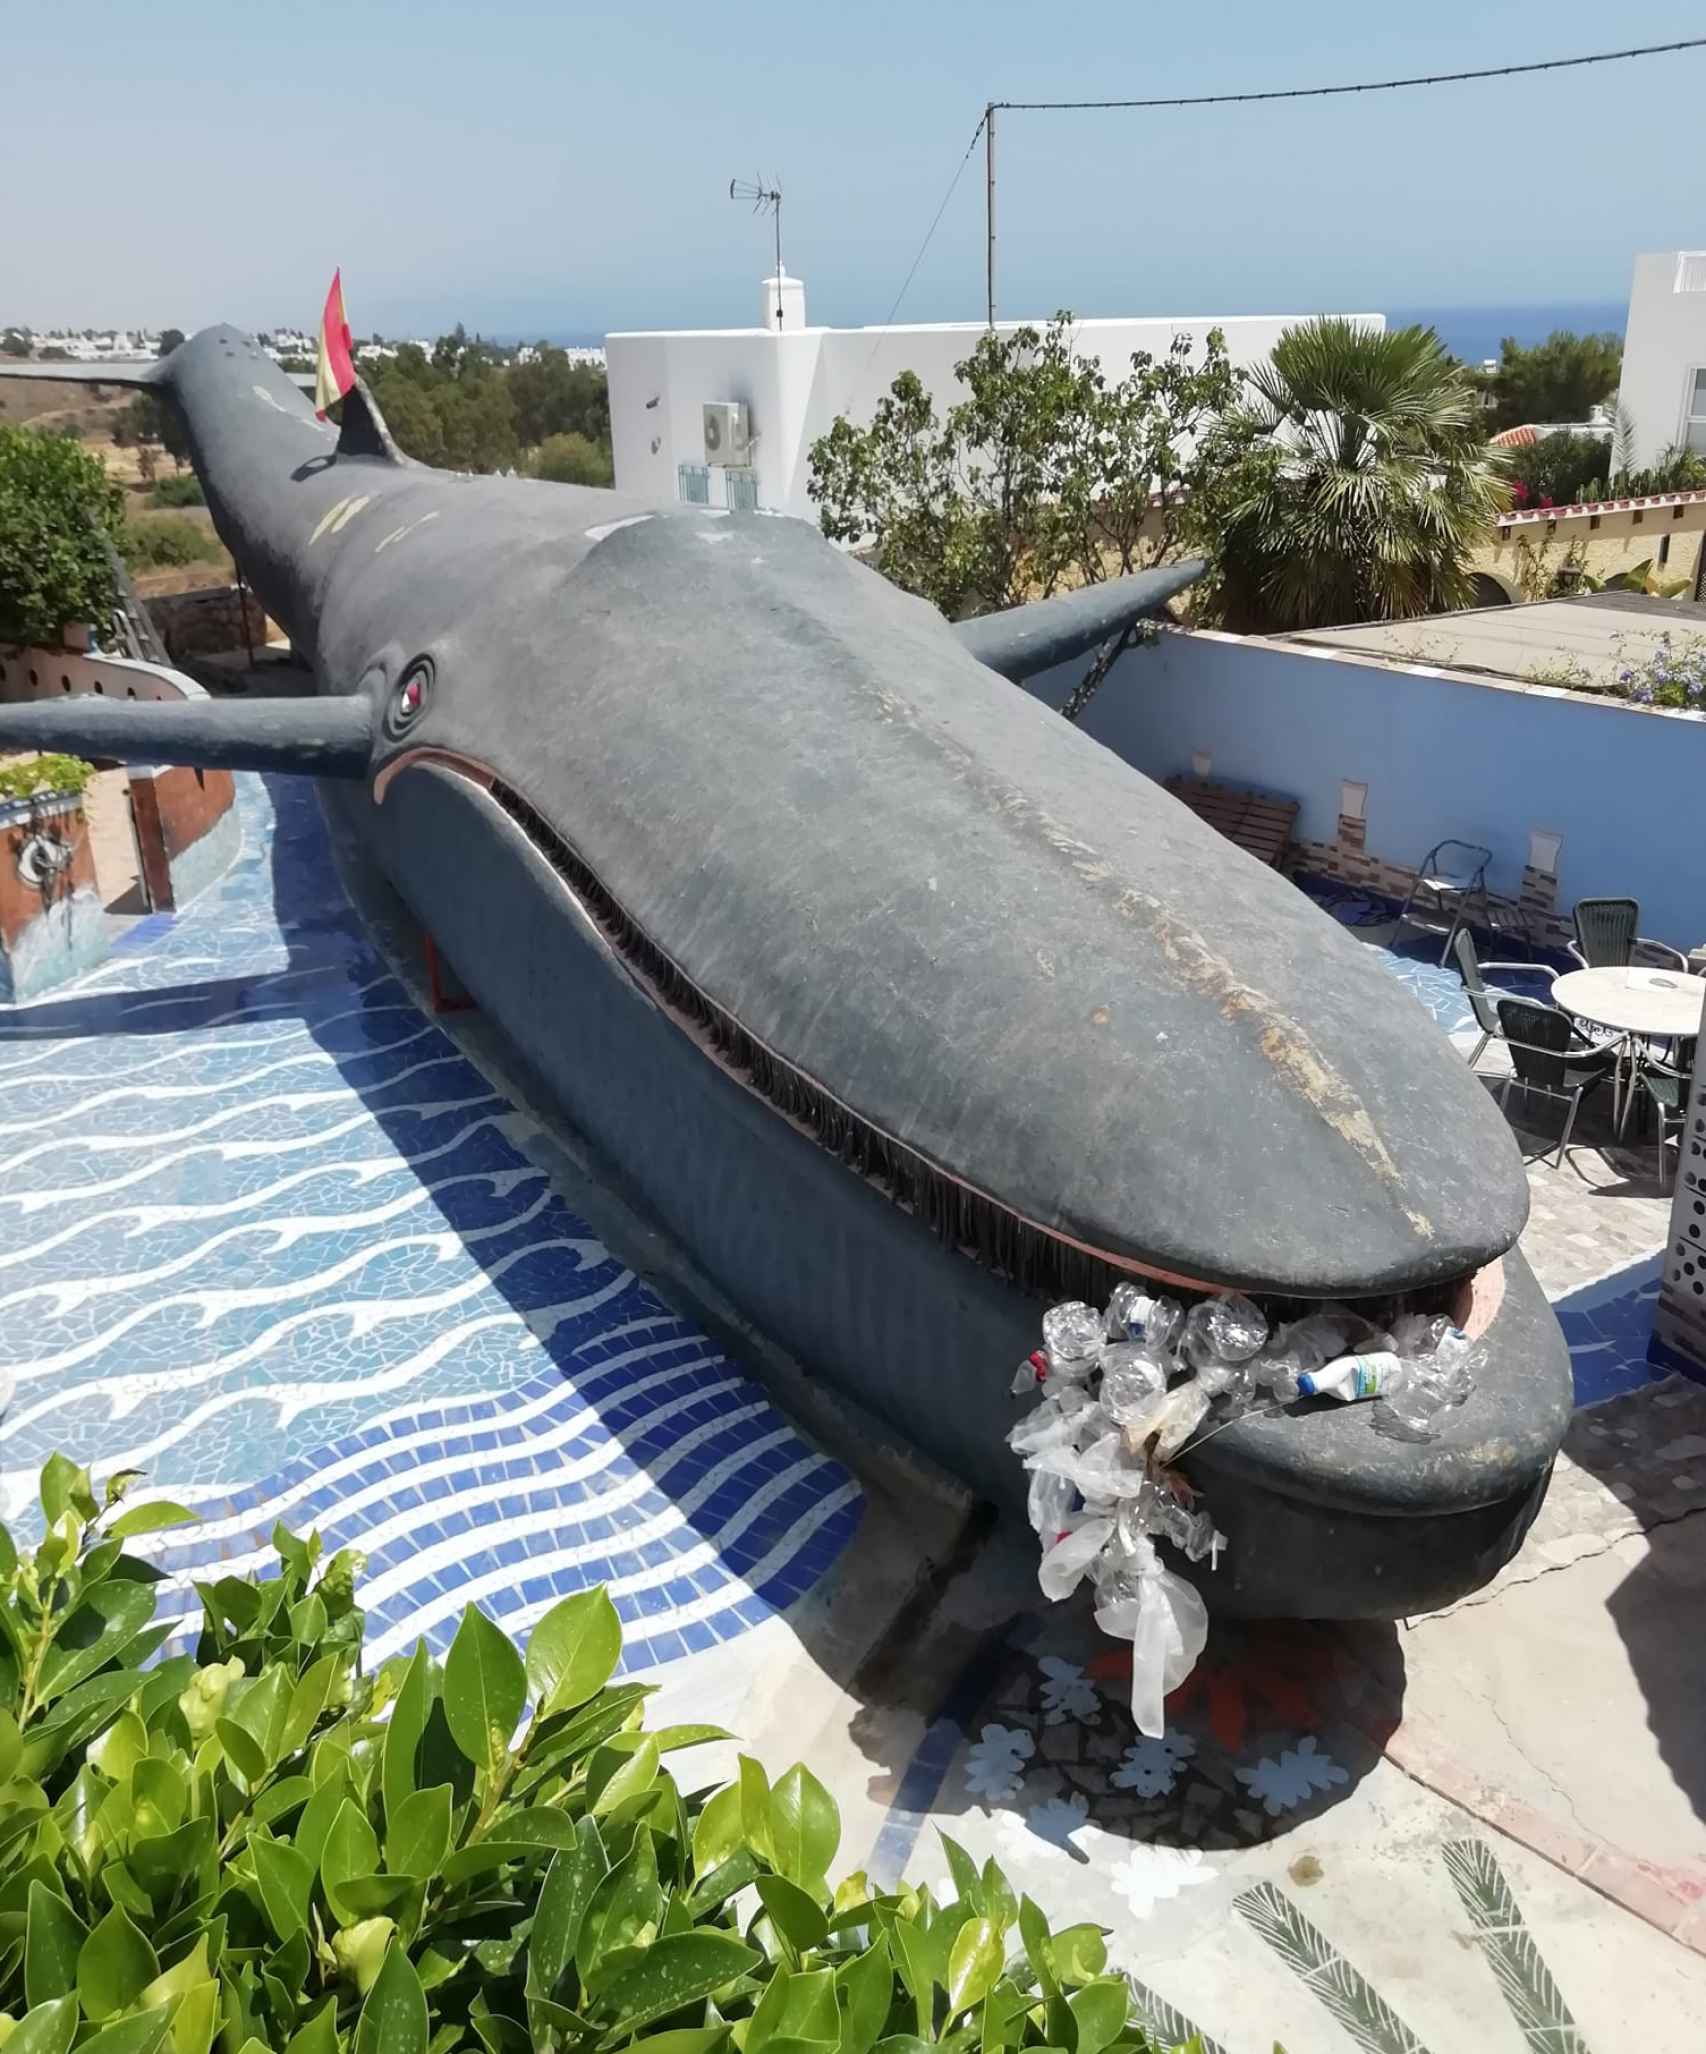 Vista aérea de la impresionante ballena construida con materiales reciclados de Nino Cortés